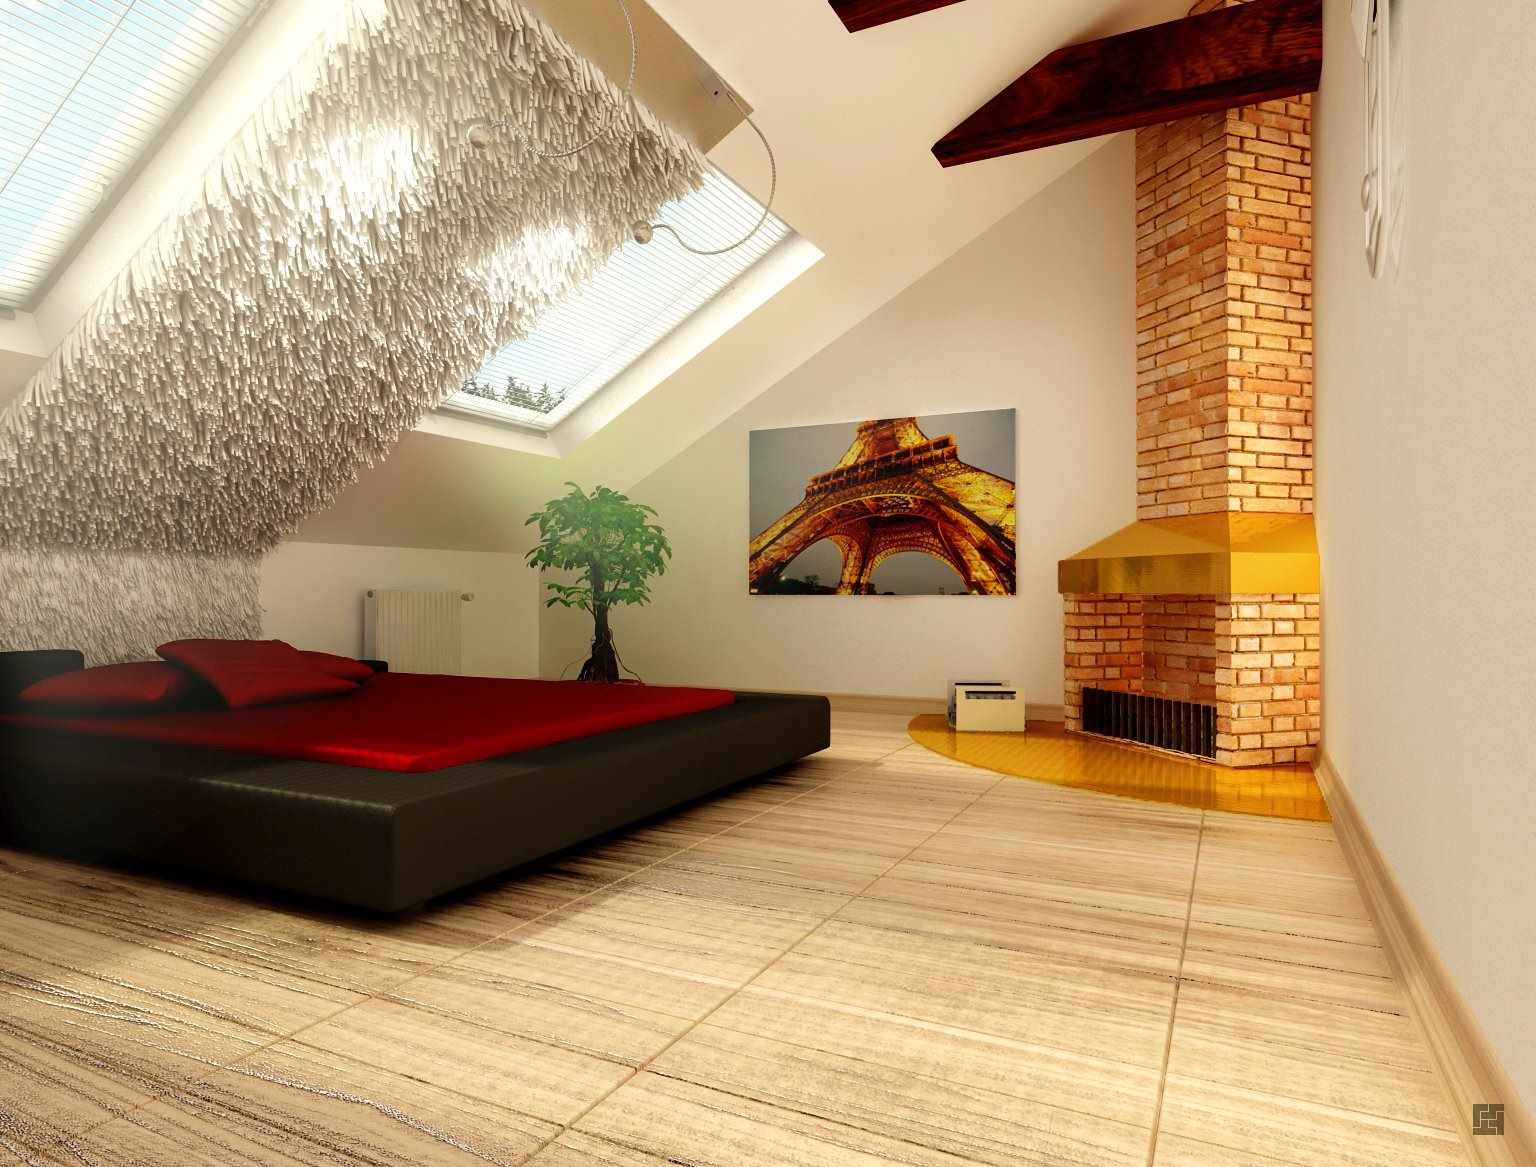 גרסה של עיצוב יפהפה של חדר שינה בעליית הגג